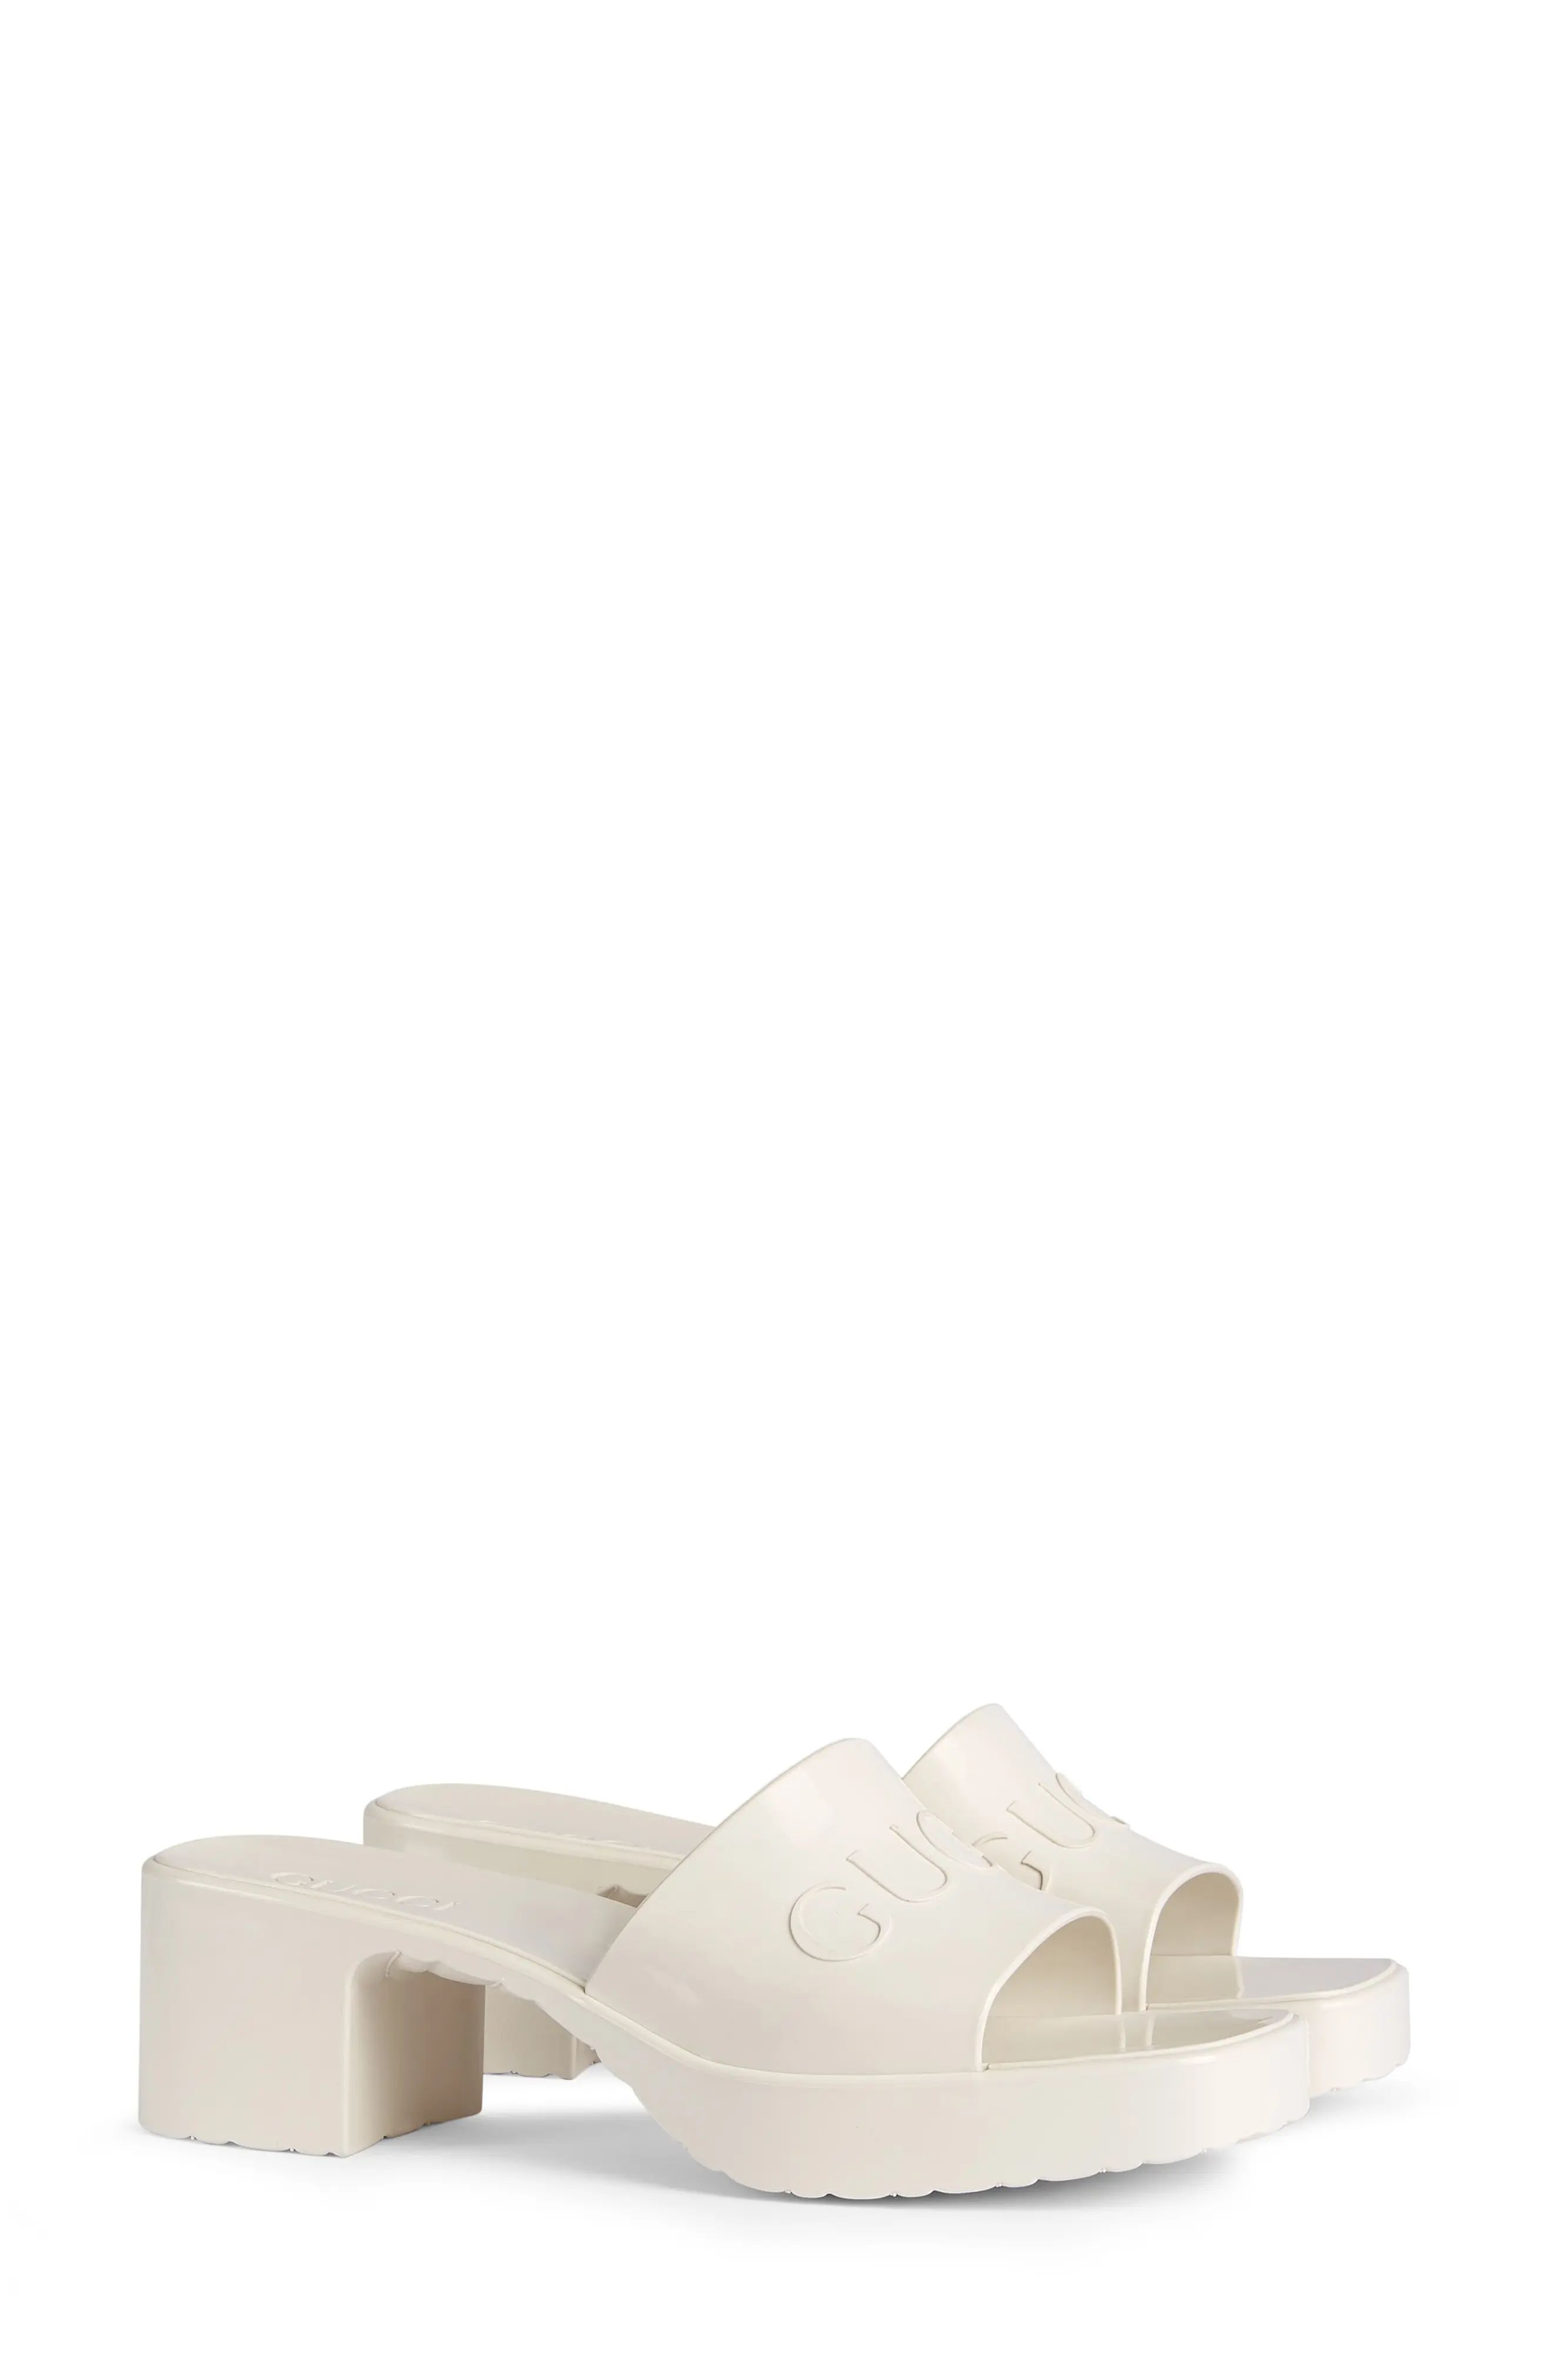 GUCCI Rubber Logo Platform Slide Sandal in Mystic White at Nordstrom, Size 10Us | Nordstrom